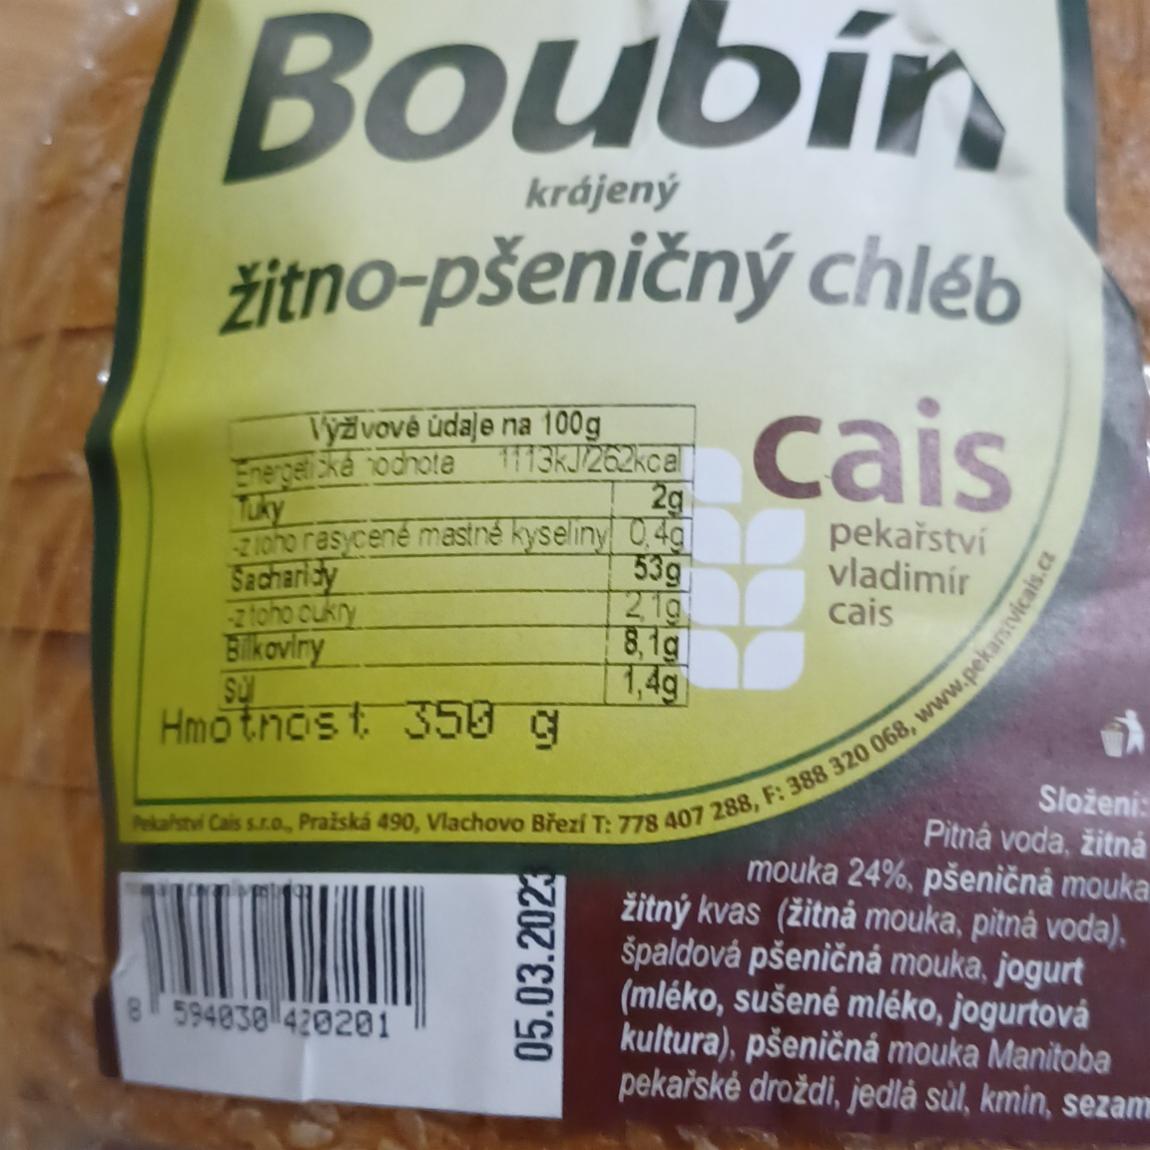 Fotografie - Boubín žitno-pšeničný chléb Pekařství Cais